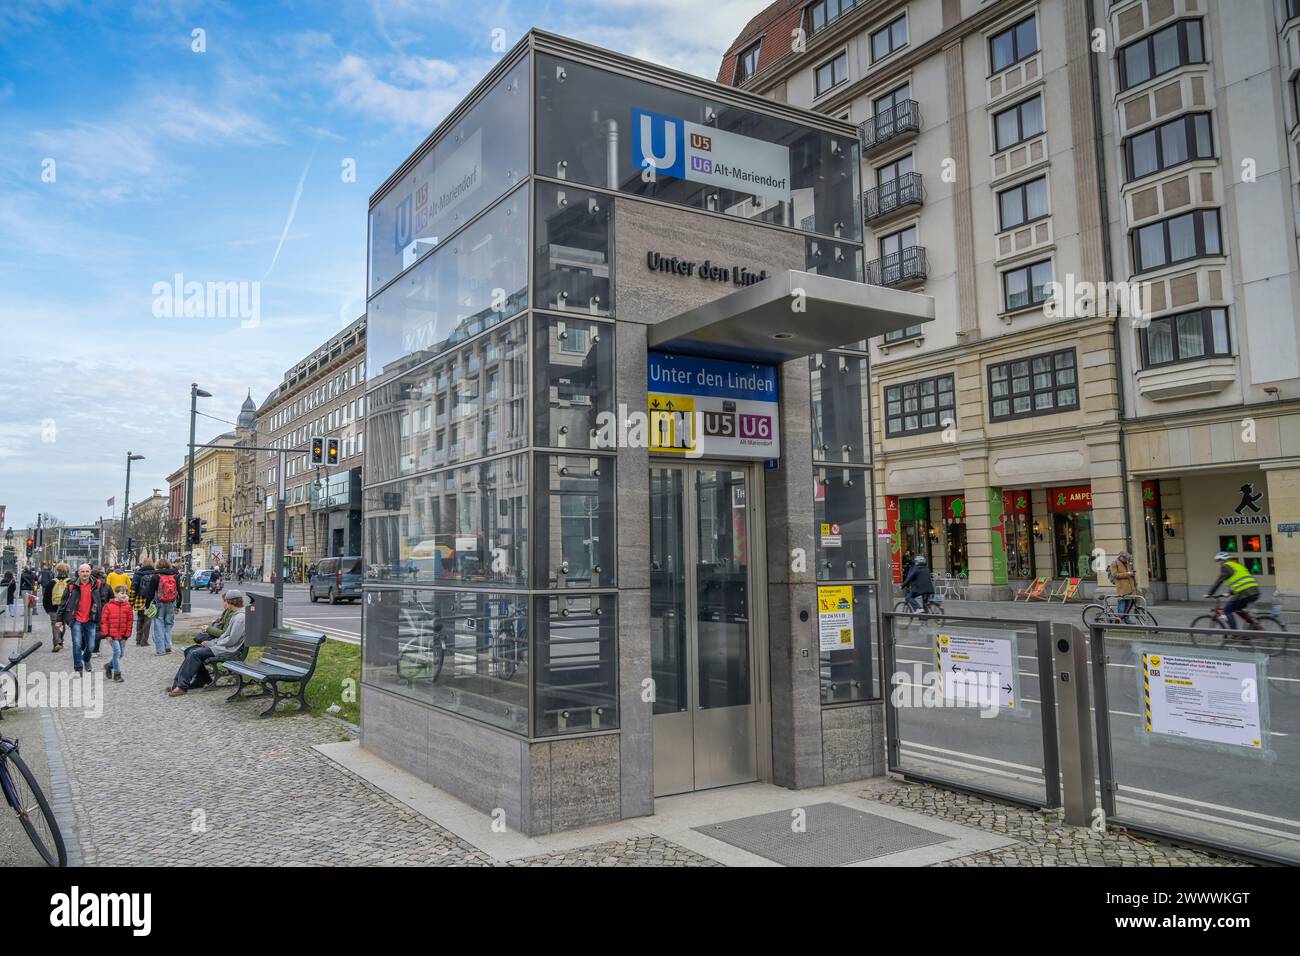 Aufzug U5 U6, Unter den Linden, Mitte, Berlin, Deutschland Banque D'Images